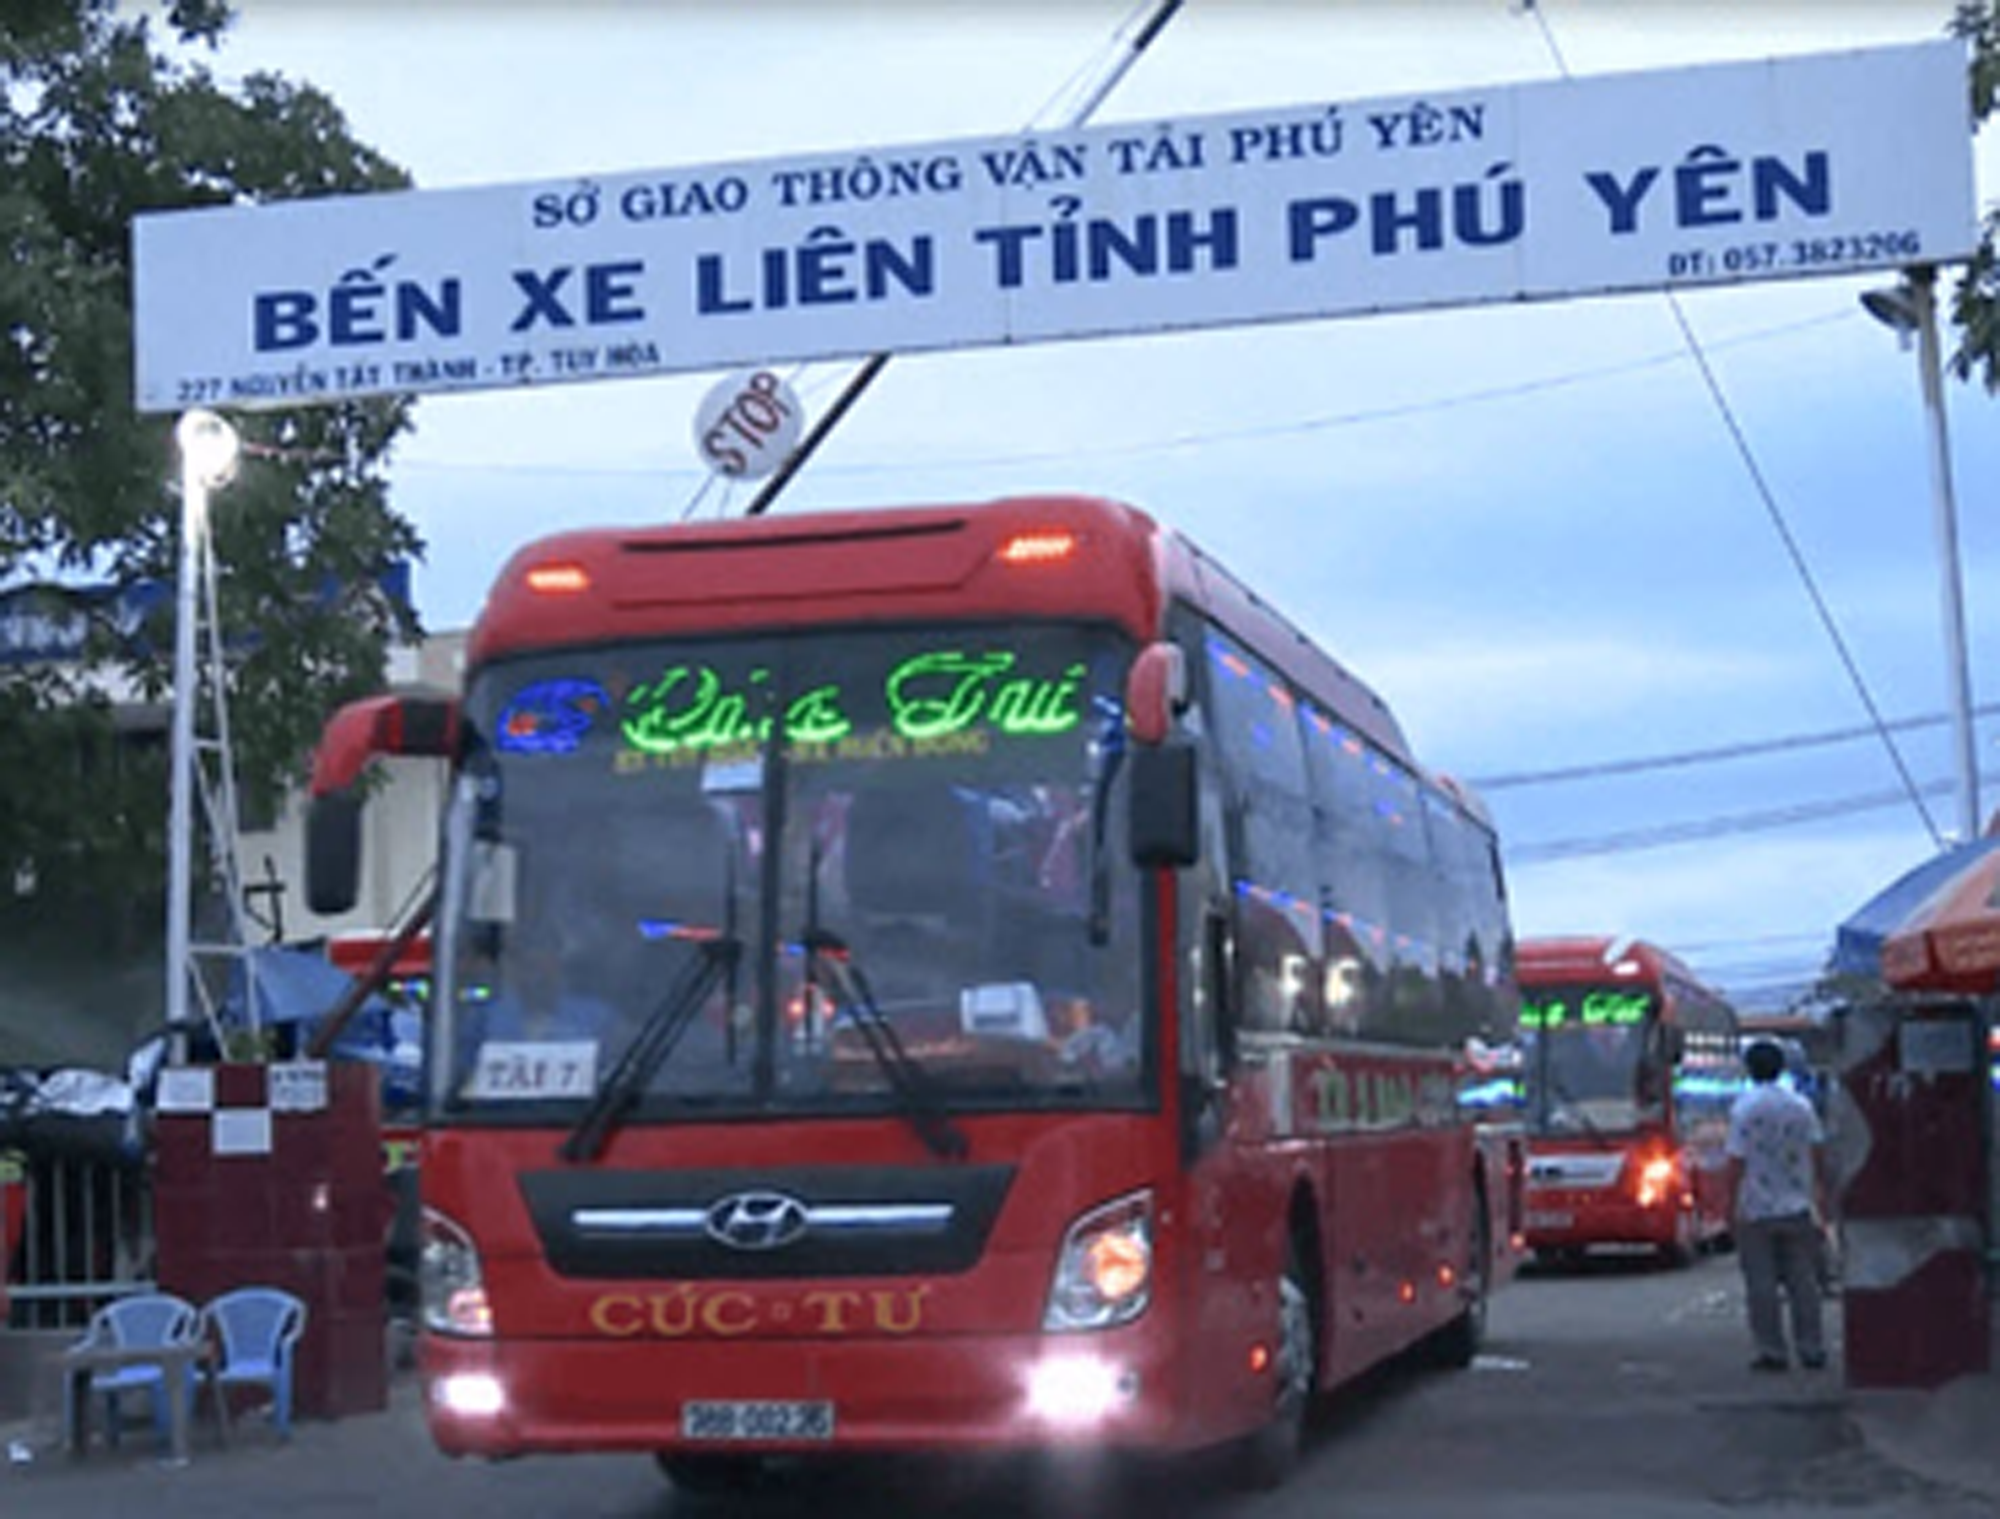 Phú Yên: Doanh nghiệp hỗ trợ 8 xe buýt phục vụ phòng chống dịch Covid-19 - Ảnh 1.